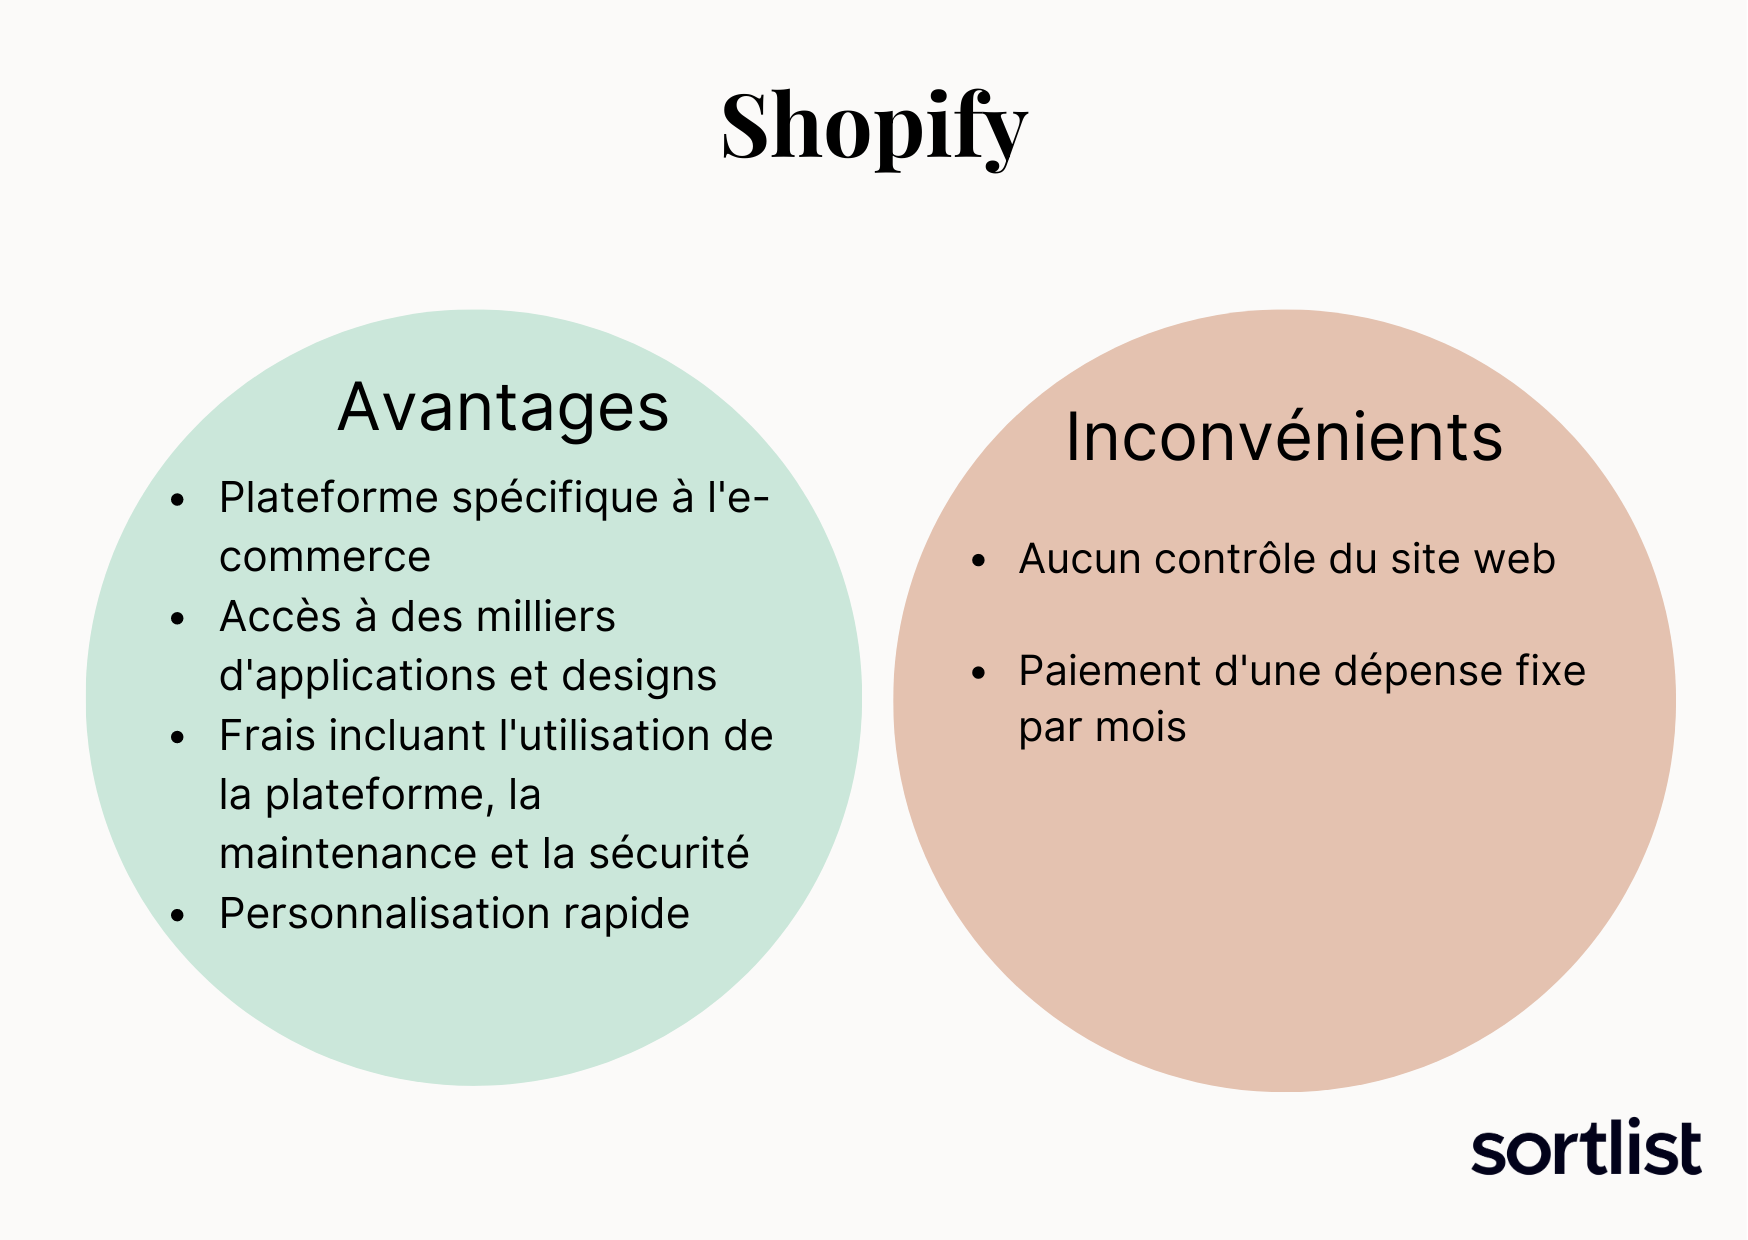 Avantages et inconvénients Shopify